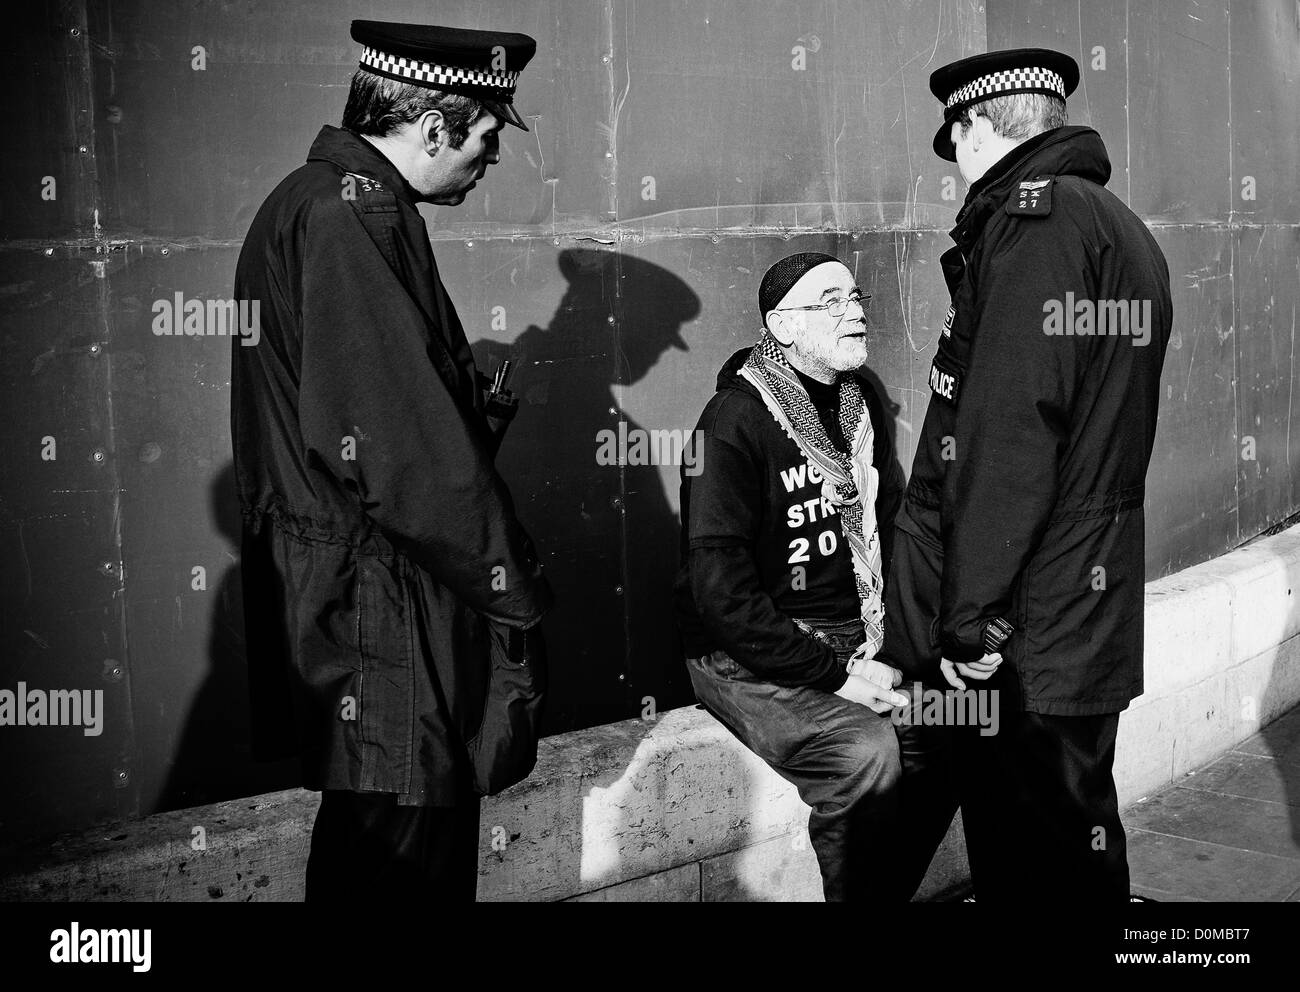 Demonstranten auf dem Trafalgar Square durch 2 uniformierte Polizisten gesprochen wird Stockfoto